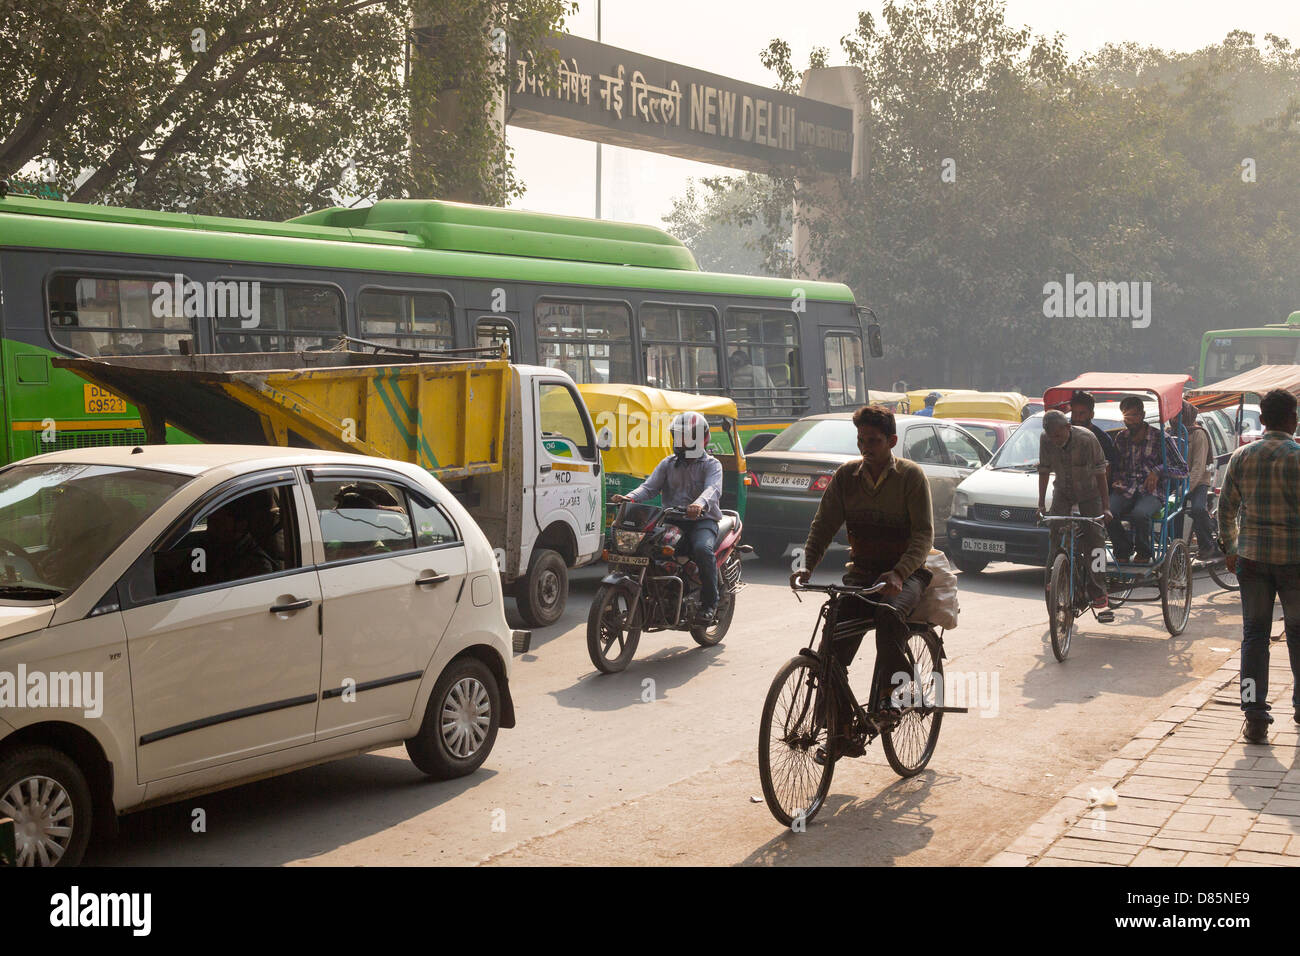 India, Uttar Pradesh, New Delhi, street scene outside New Delhi Railway Station Stock Photo